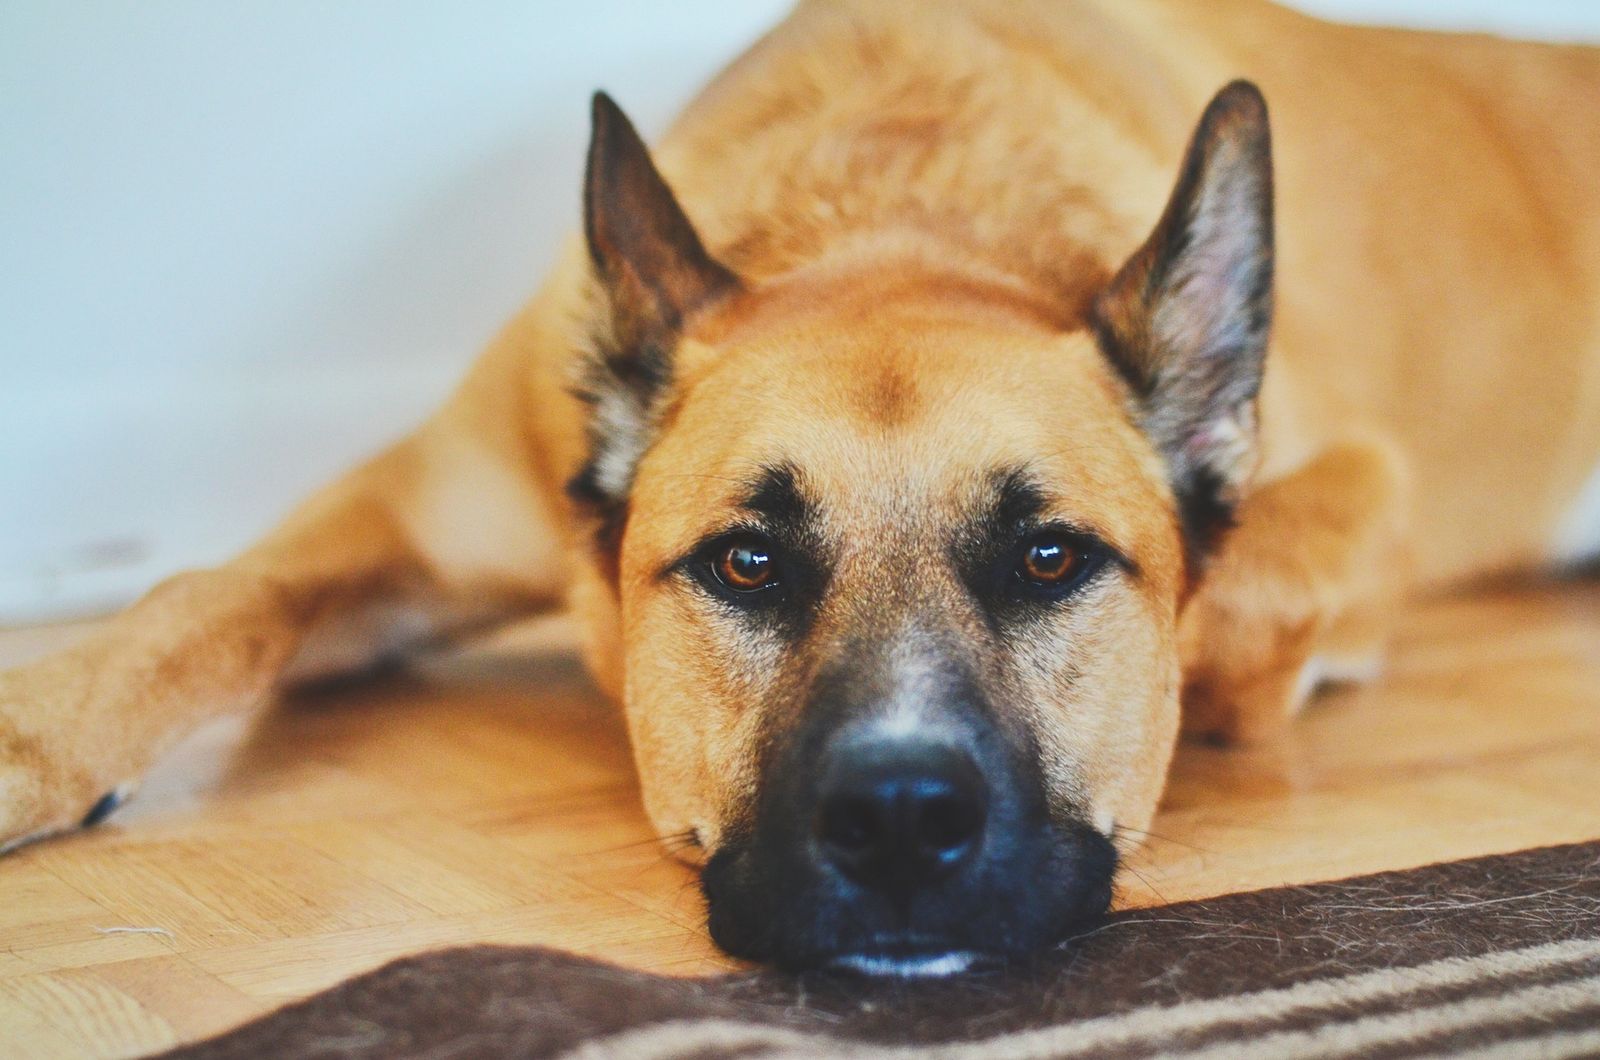 Ein hellbrauner Hund mit schwarzer Schnauze liegt abgeschlagen mit dem Kopf auf dem Boden und schaut in Nahaufnahme direkt den Betrachter an.